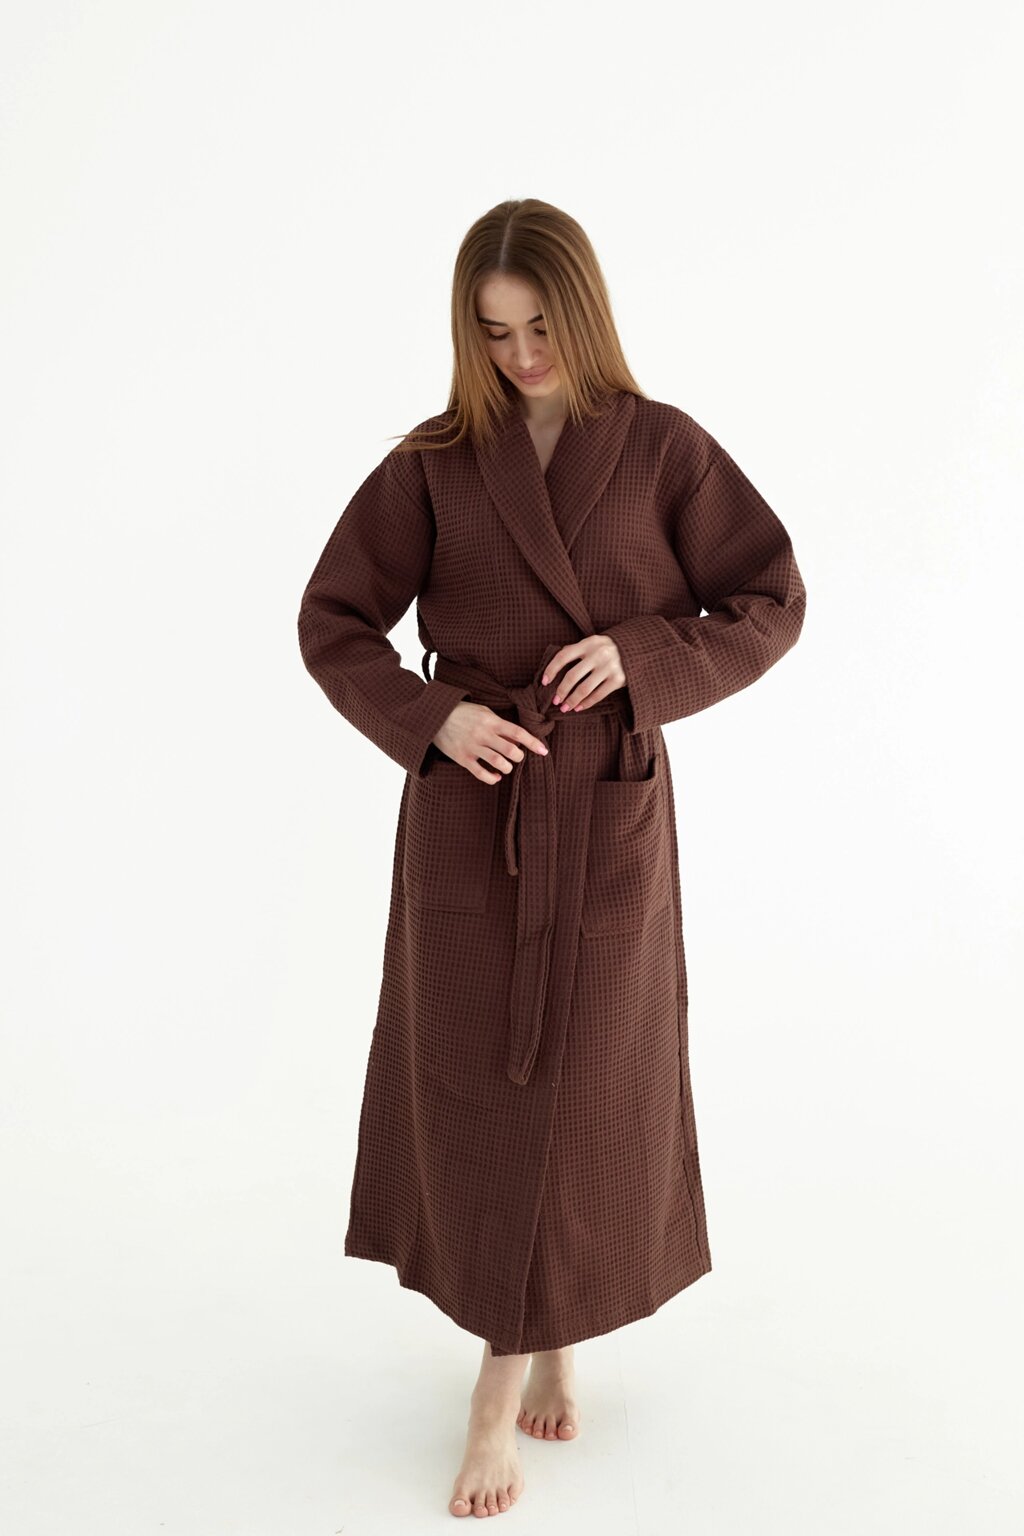 Вафельний халат жіночий L коричневий 100% бавовна 320 г/м2 від компанії IDEAL TEXTILE: махрові рушники, халати, постільна білизна - фото 1